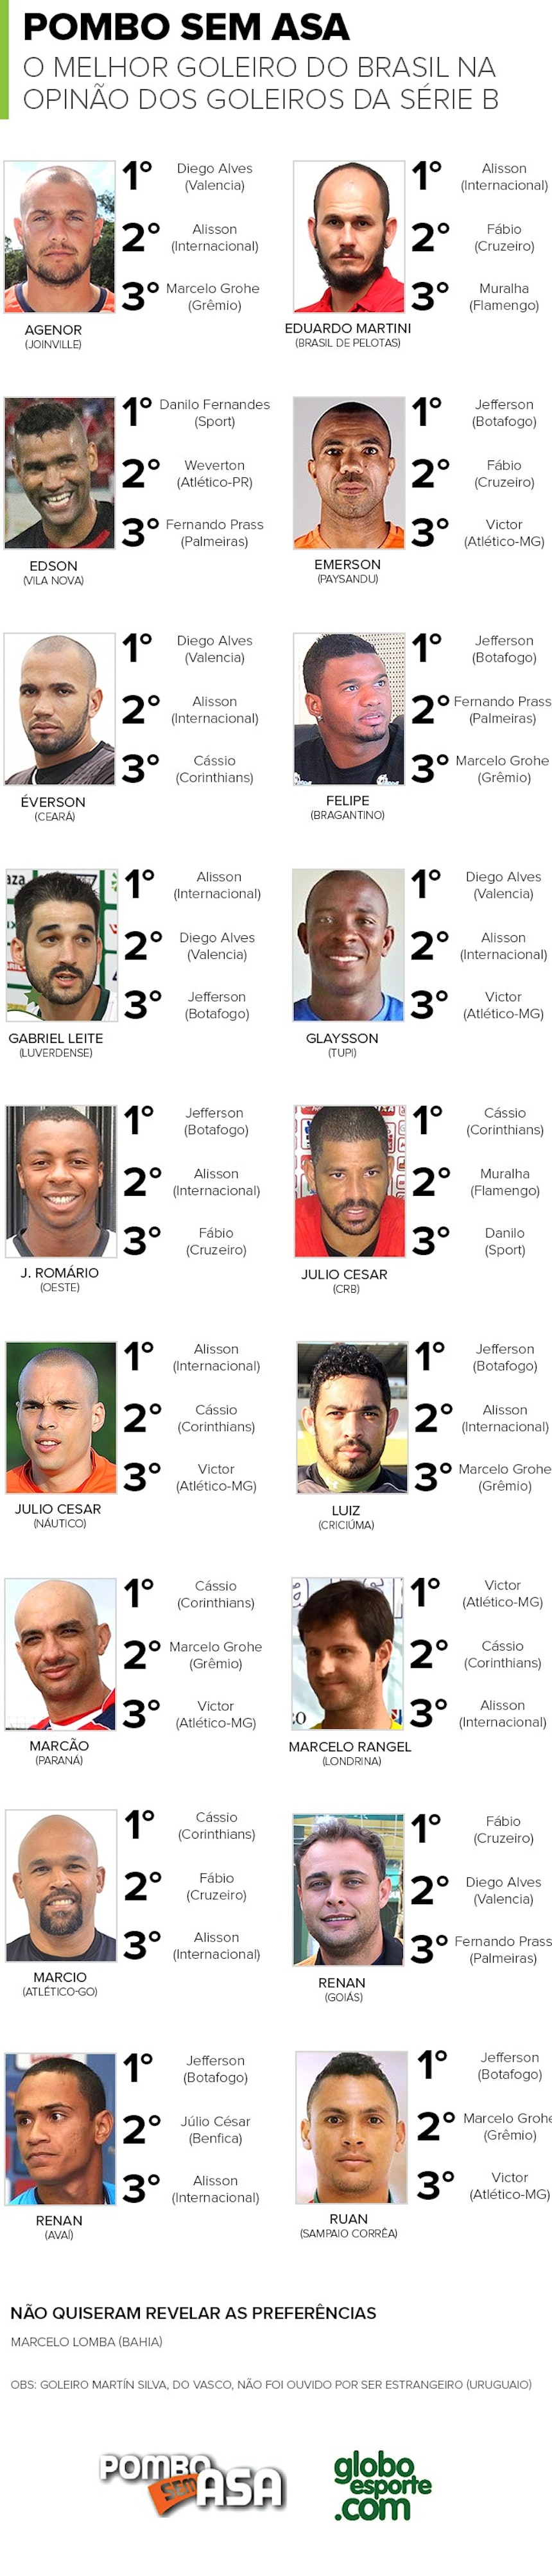 Os melhores goleiros do Brasil - Série B